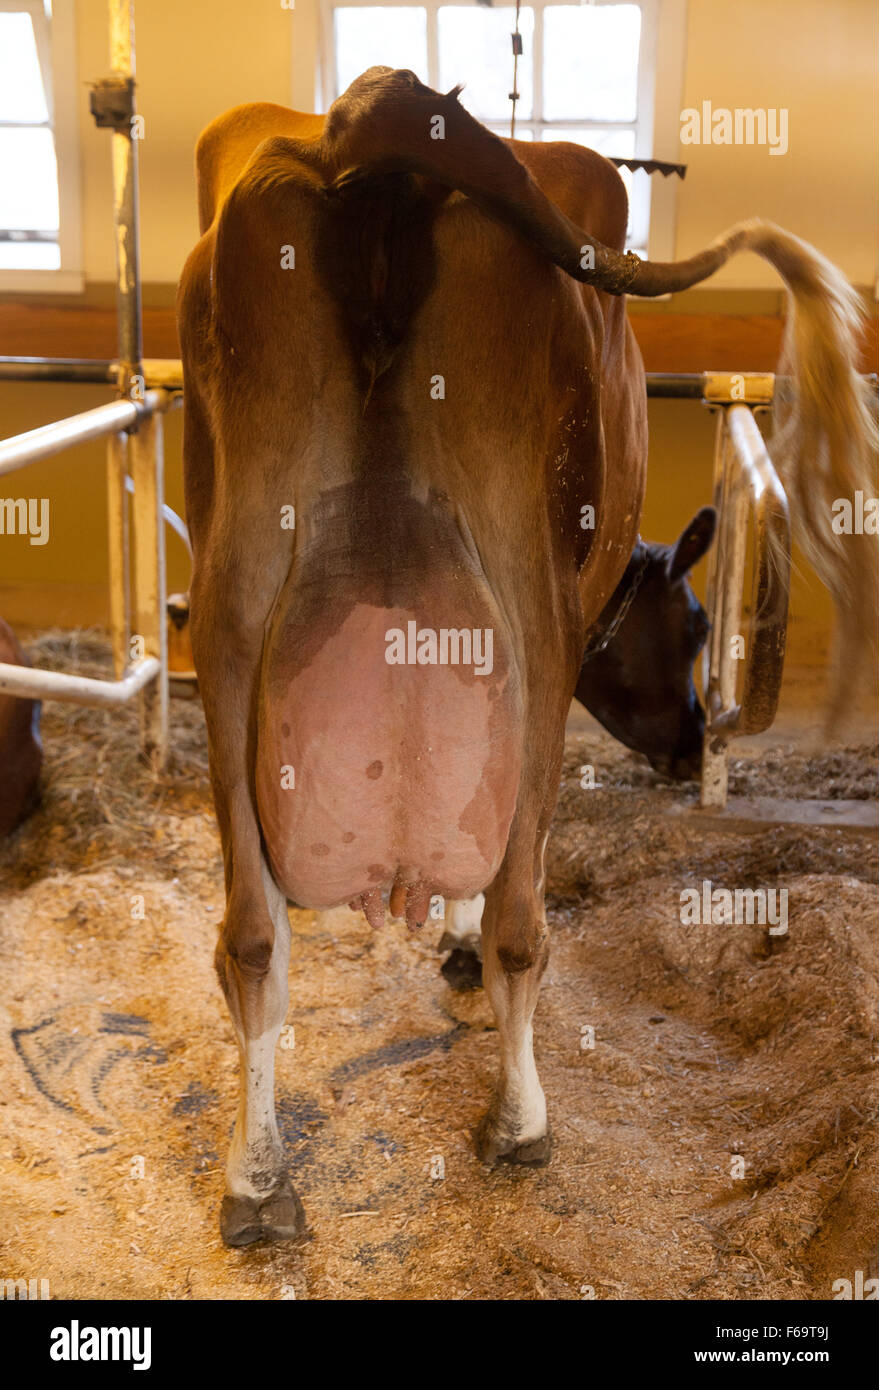 Vista trasera de una vaca lechera con la ubre completa Foto de stock